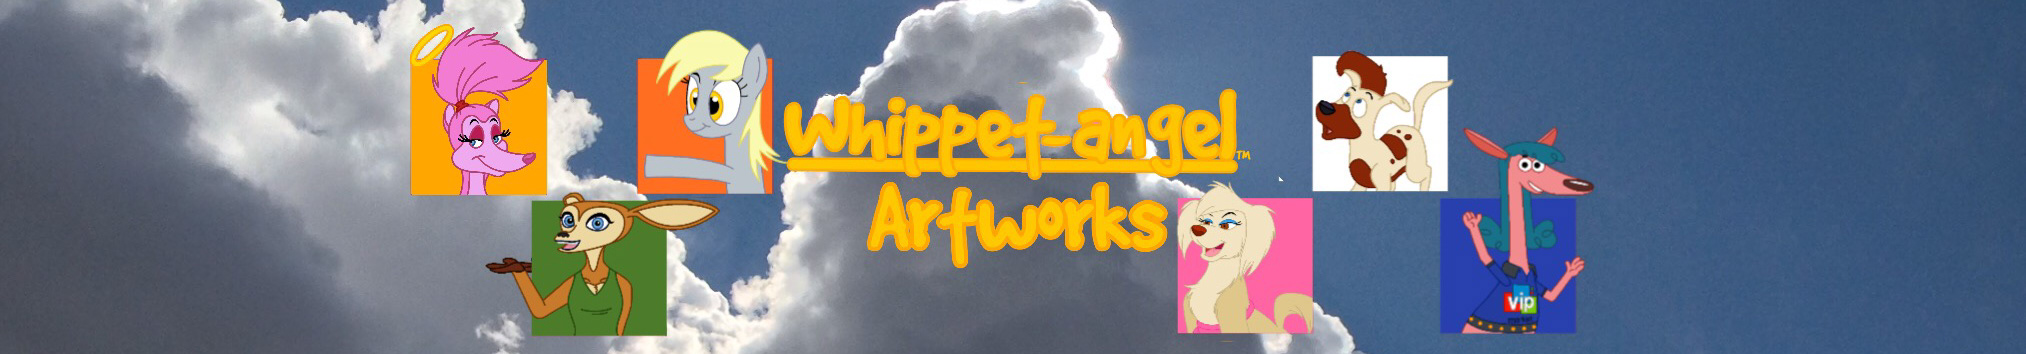 Bannière de profil de Whippet angel artworks!